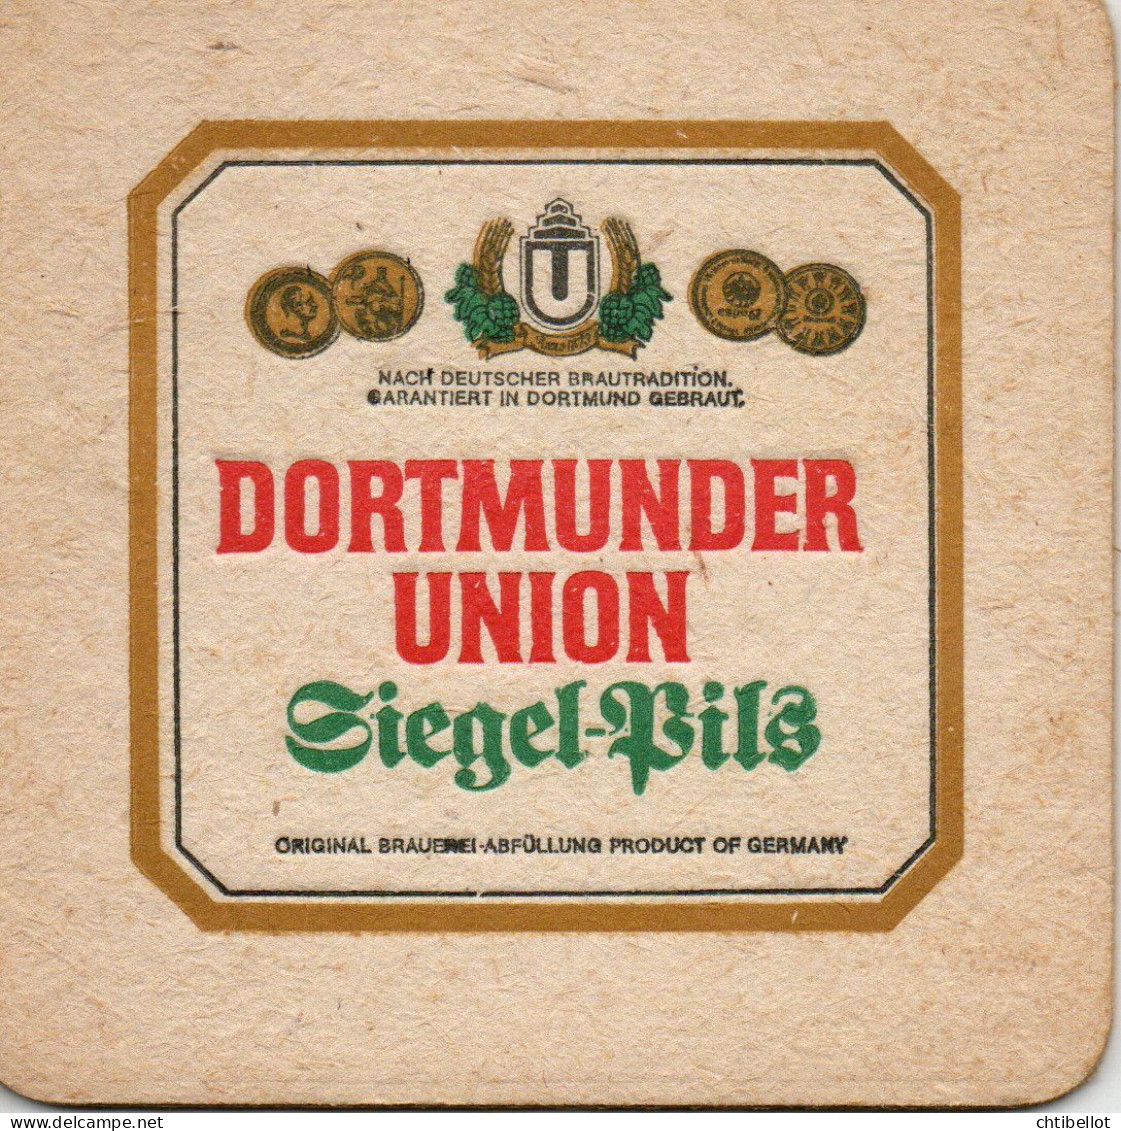 SbD208	Dormunder	Union - Siegel-Pils	Herzlichn Grub Aus Dortmund - Bierviltjes